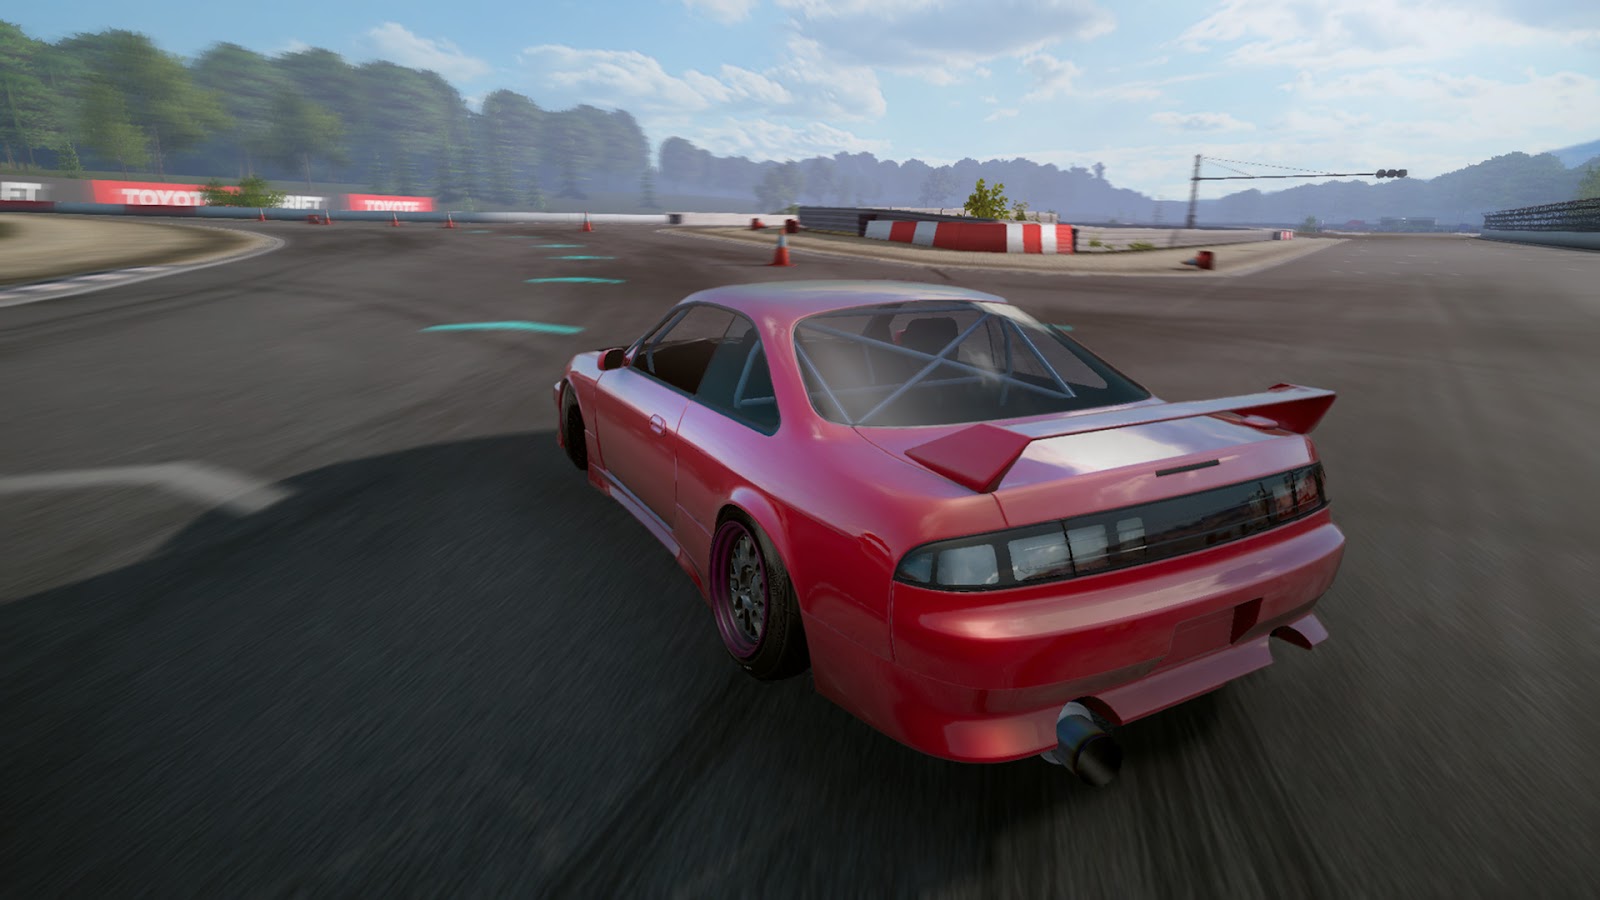 Screenshot from Drift Zone's gameplay